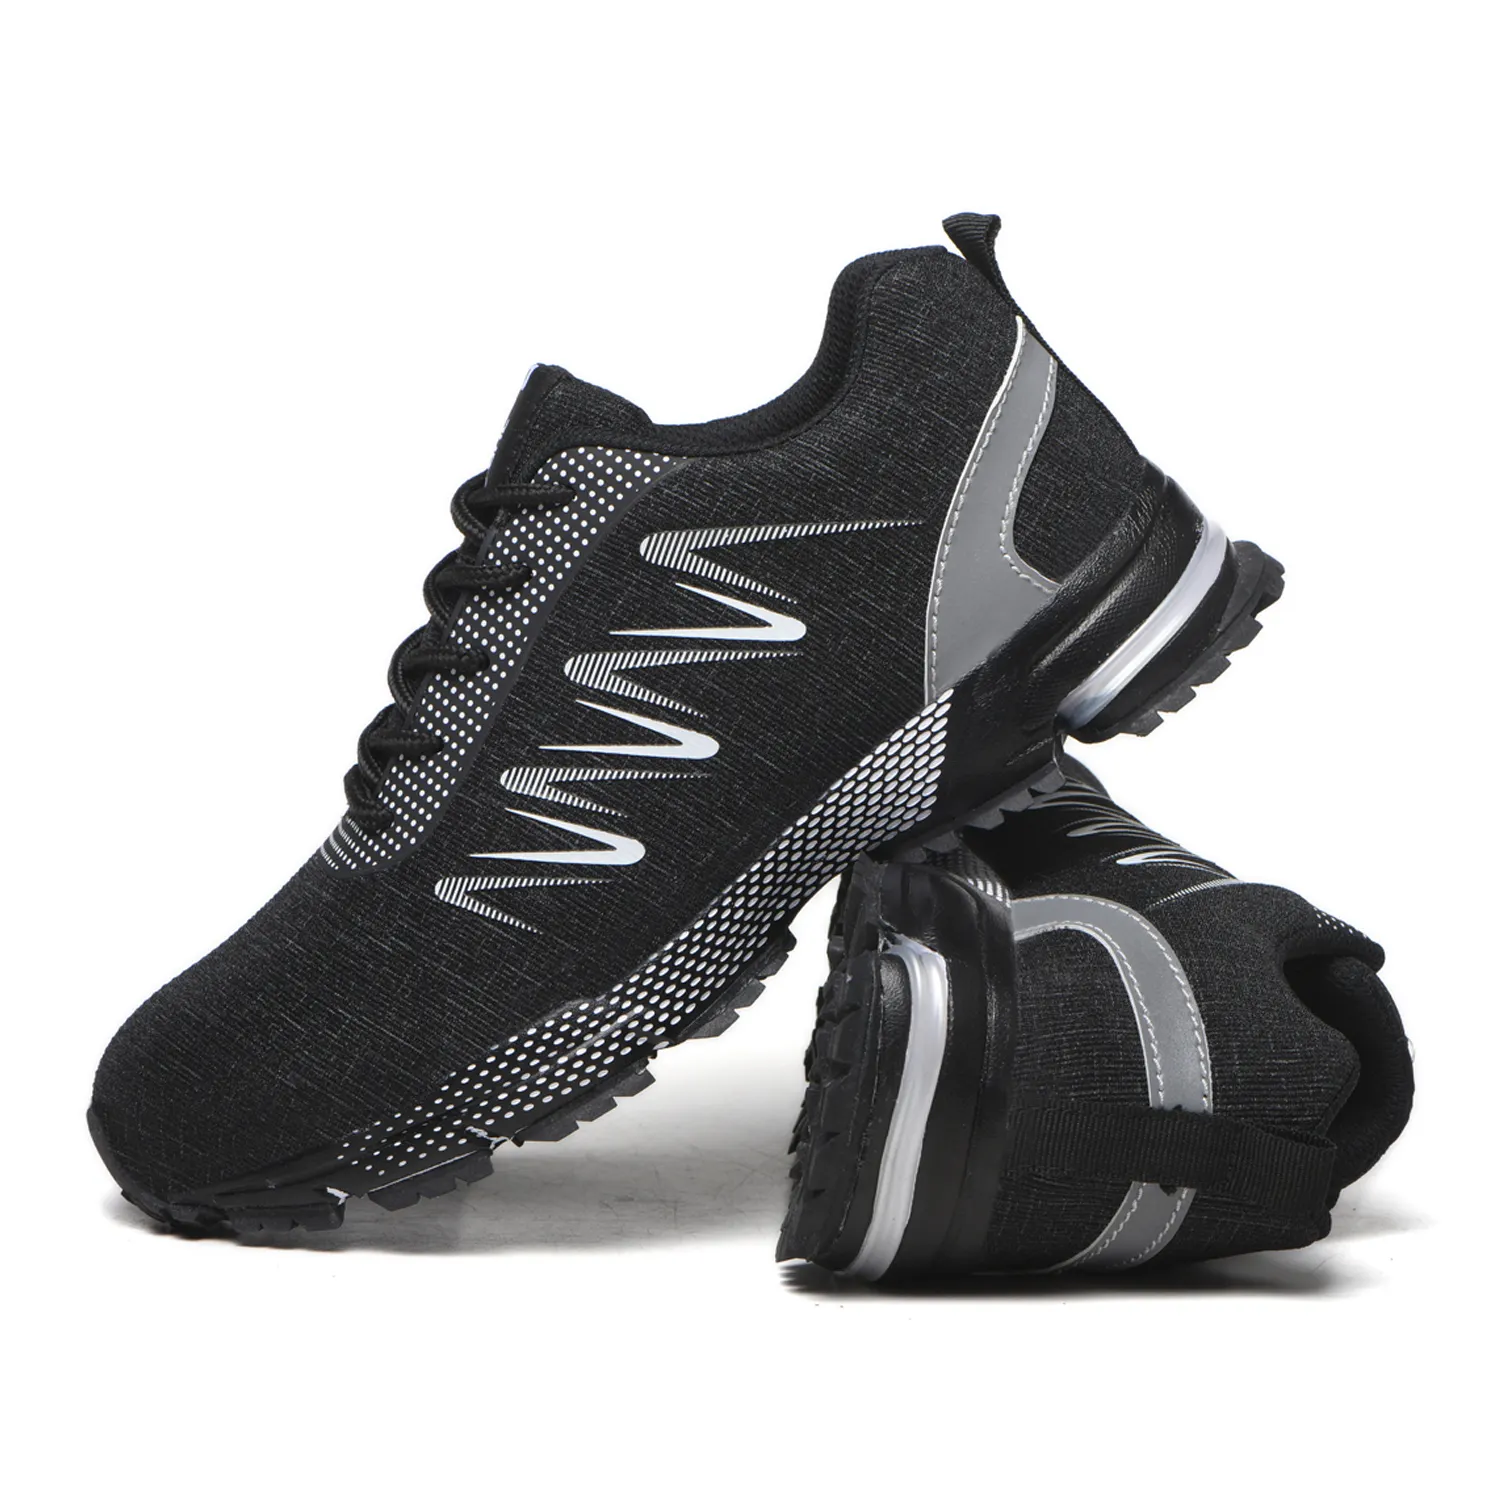 Vente directe du fabricant chaussures de sport esd jogging d'été noires légères à embouts en acier intégrés chaussures de sécurité pour hommes